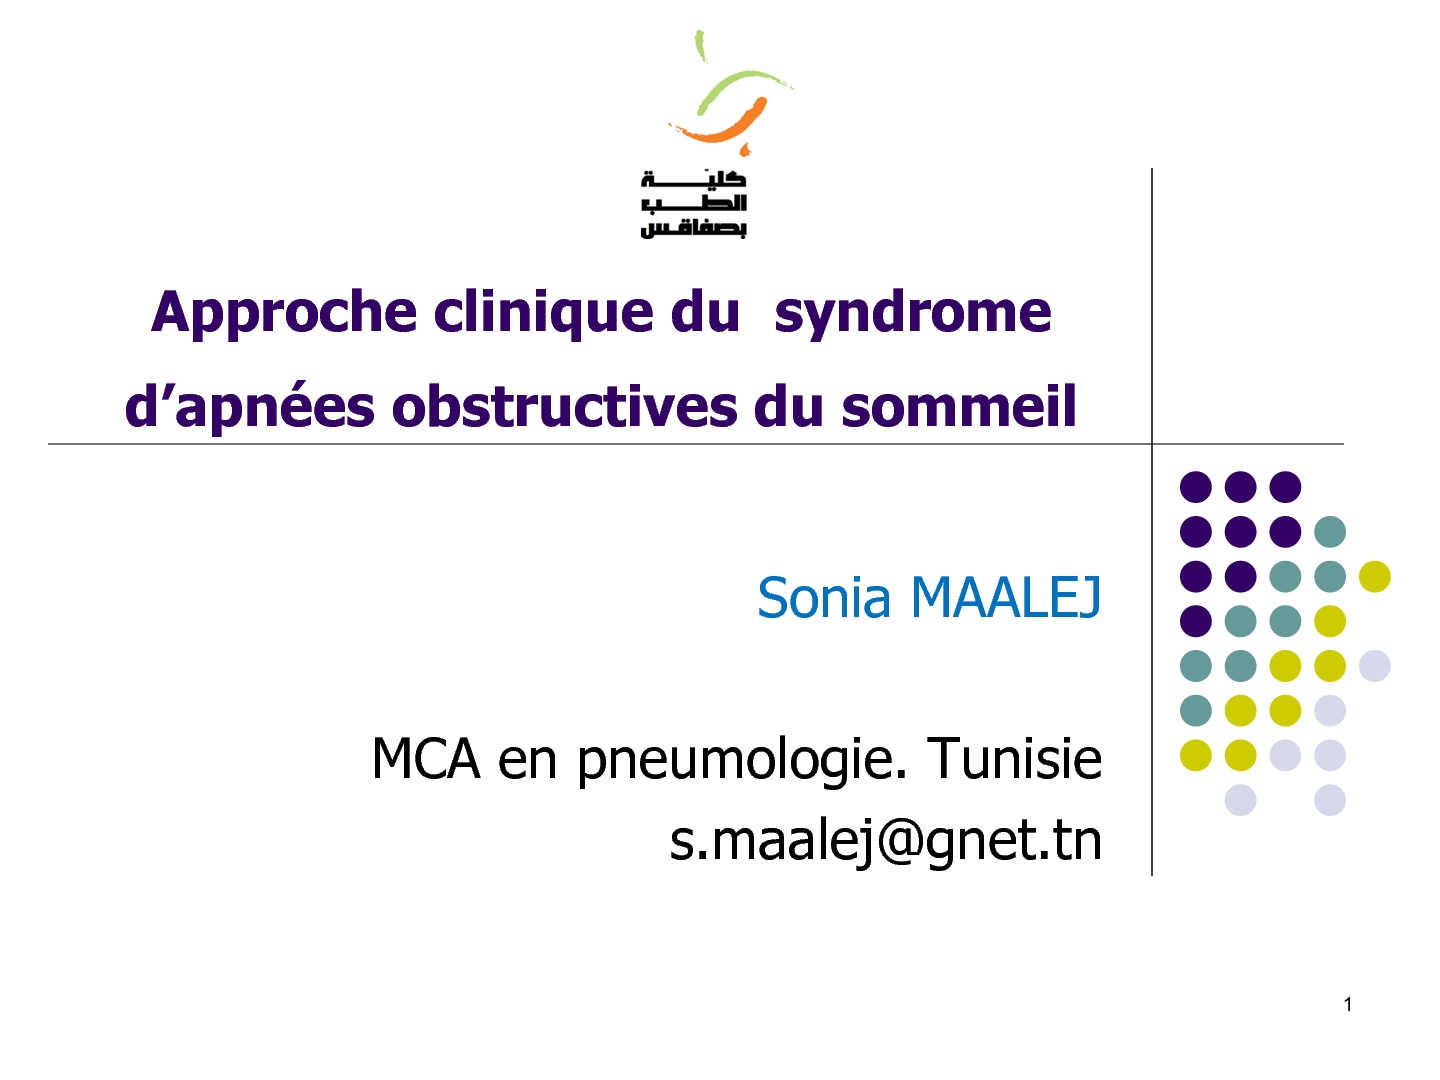 Approche clinique du syndrome d'apnées obstructives du sommeil. Sonia Maalej